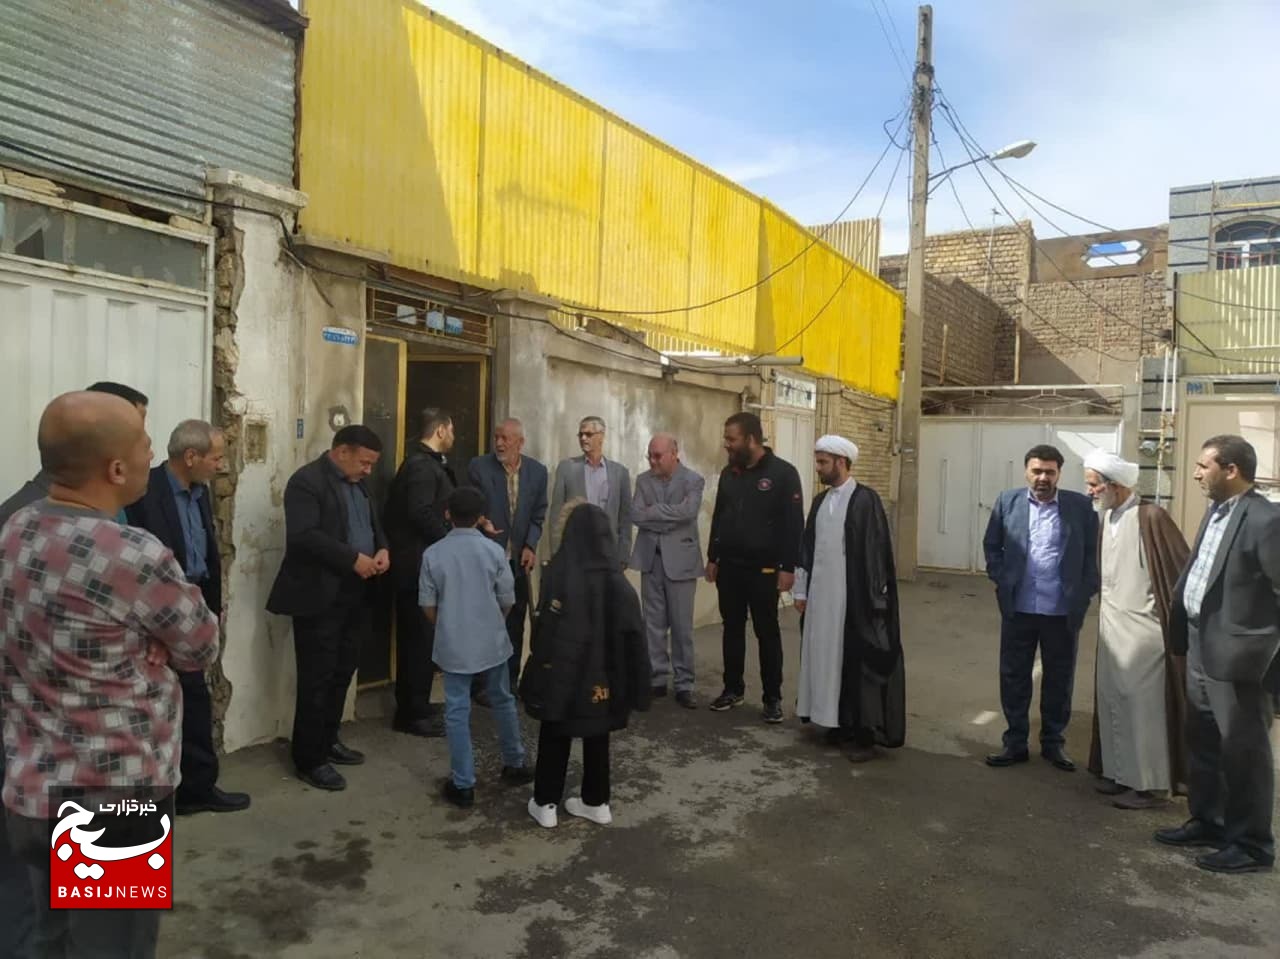 دیدار بسیجیان حوزه شهید قربانی قم با خانواده گرامی شهدا به مناسبت آغاز سال جدید